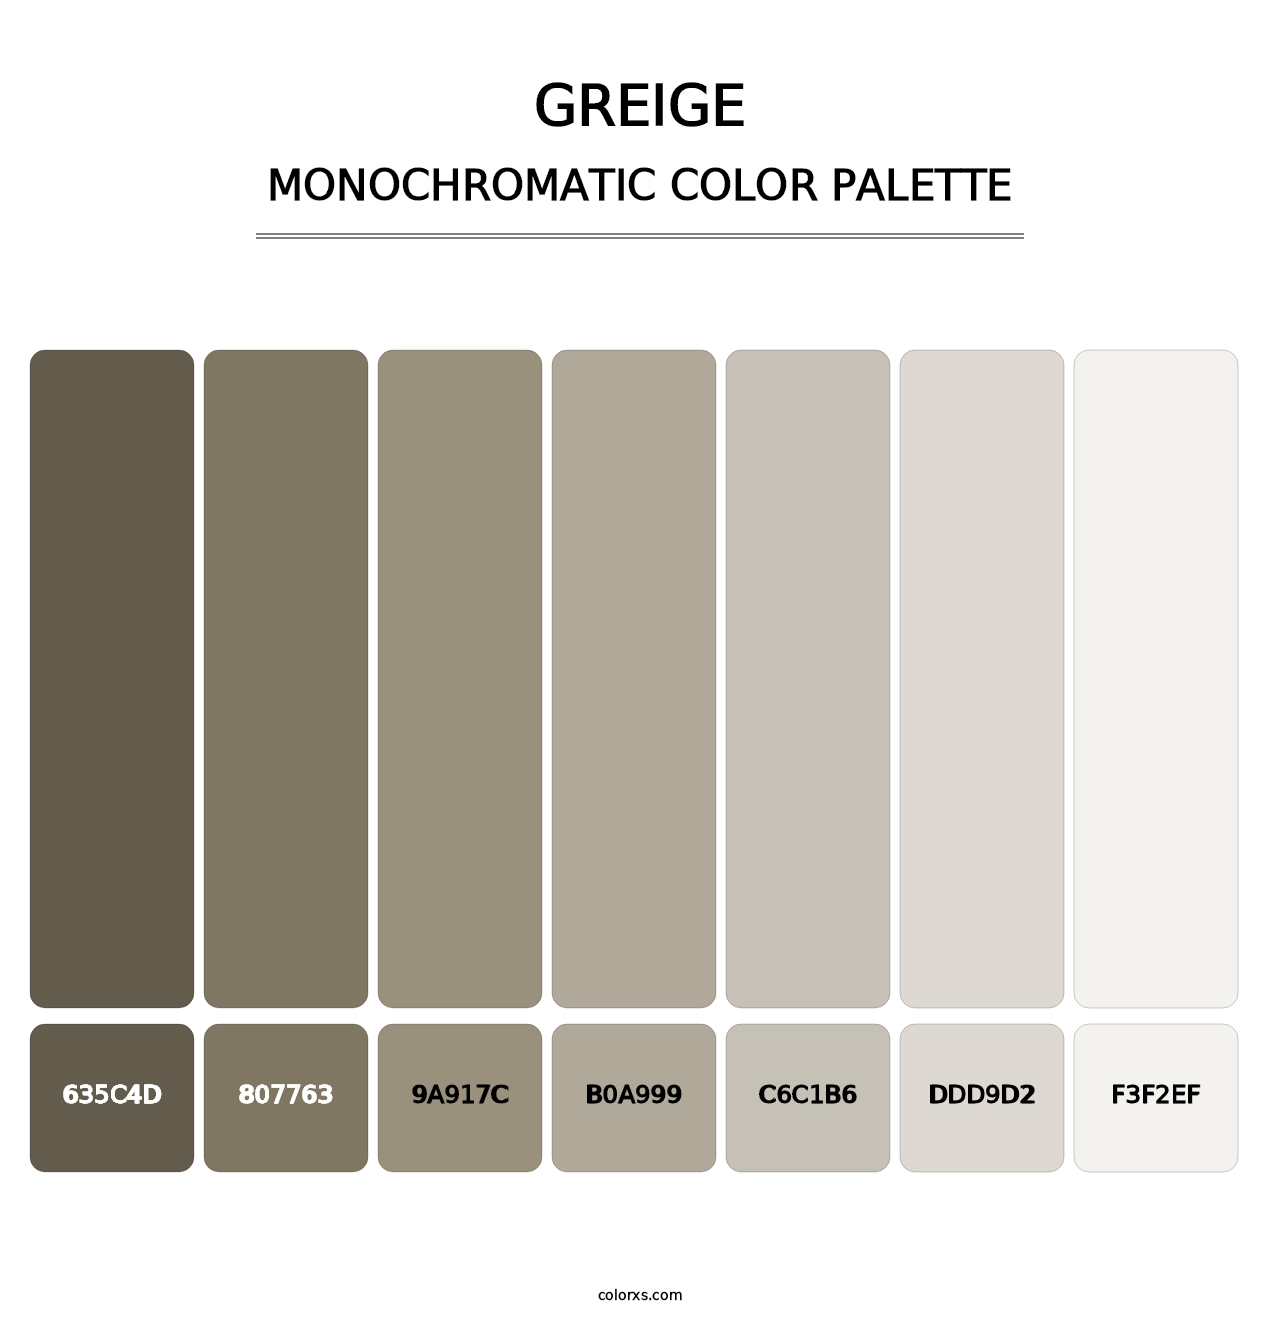 Greige - Monochromatic Color Palette